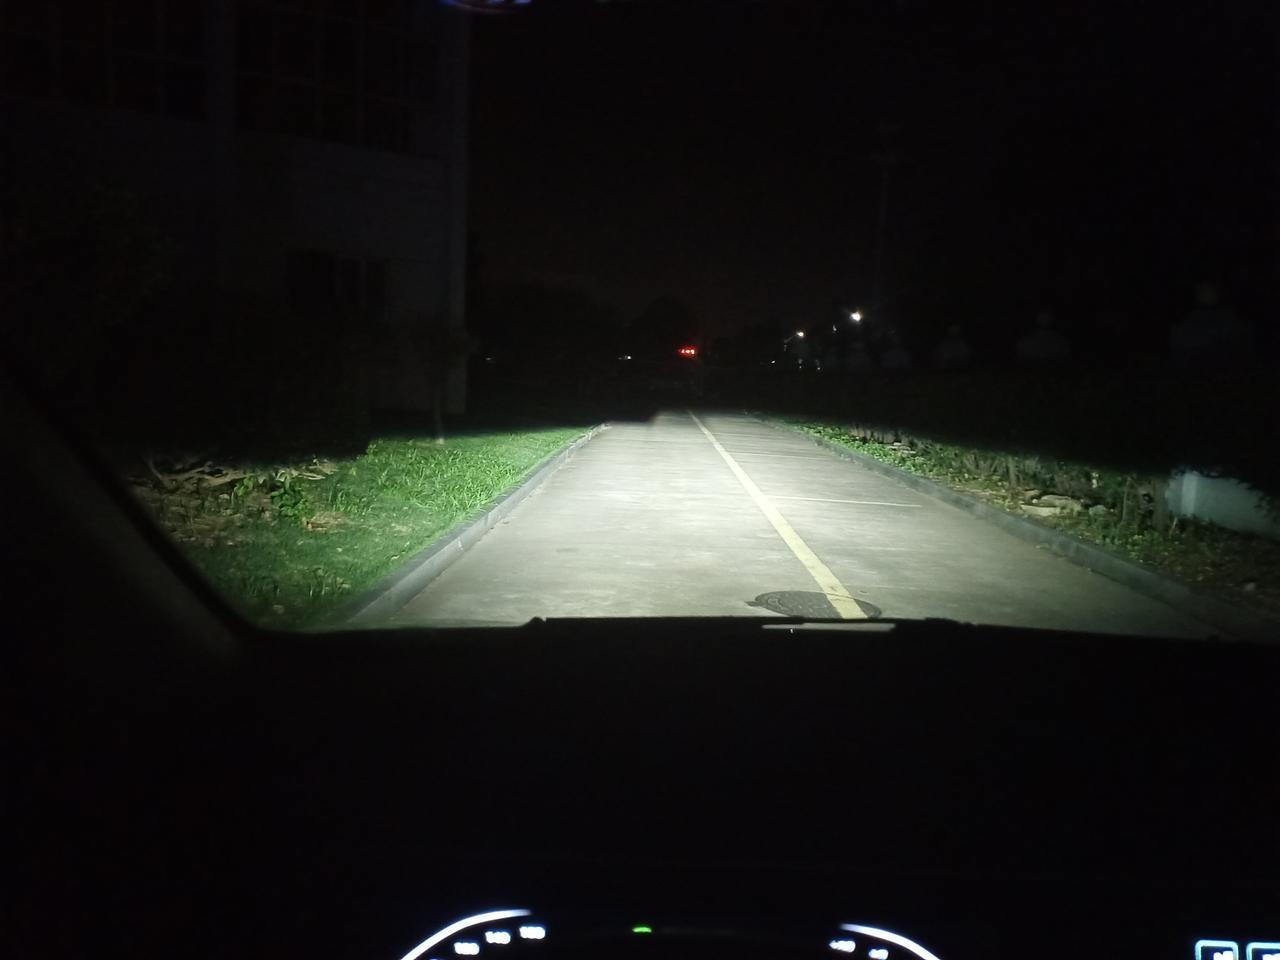 奔奔e star 大家的车灯也是这样么，开远光中间有一道黑暗。特别别扭影响安全